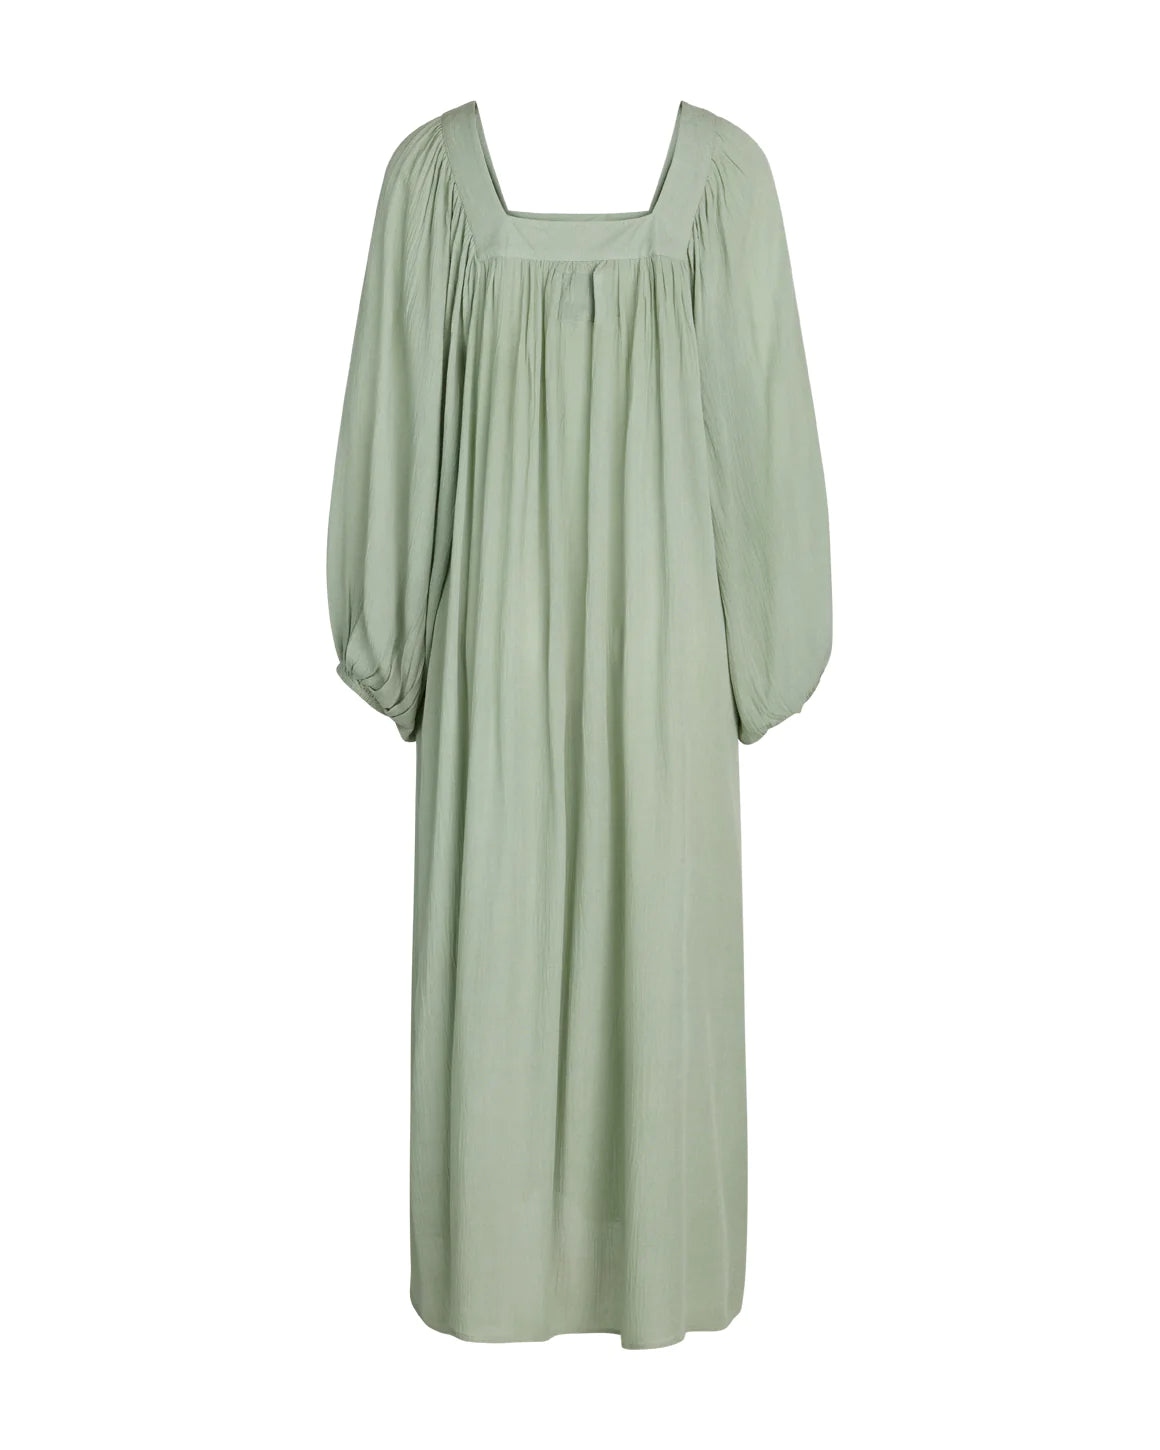 Saga Dress - Mint green